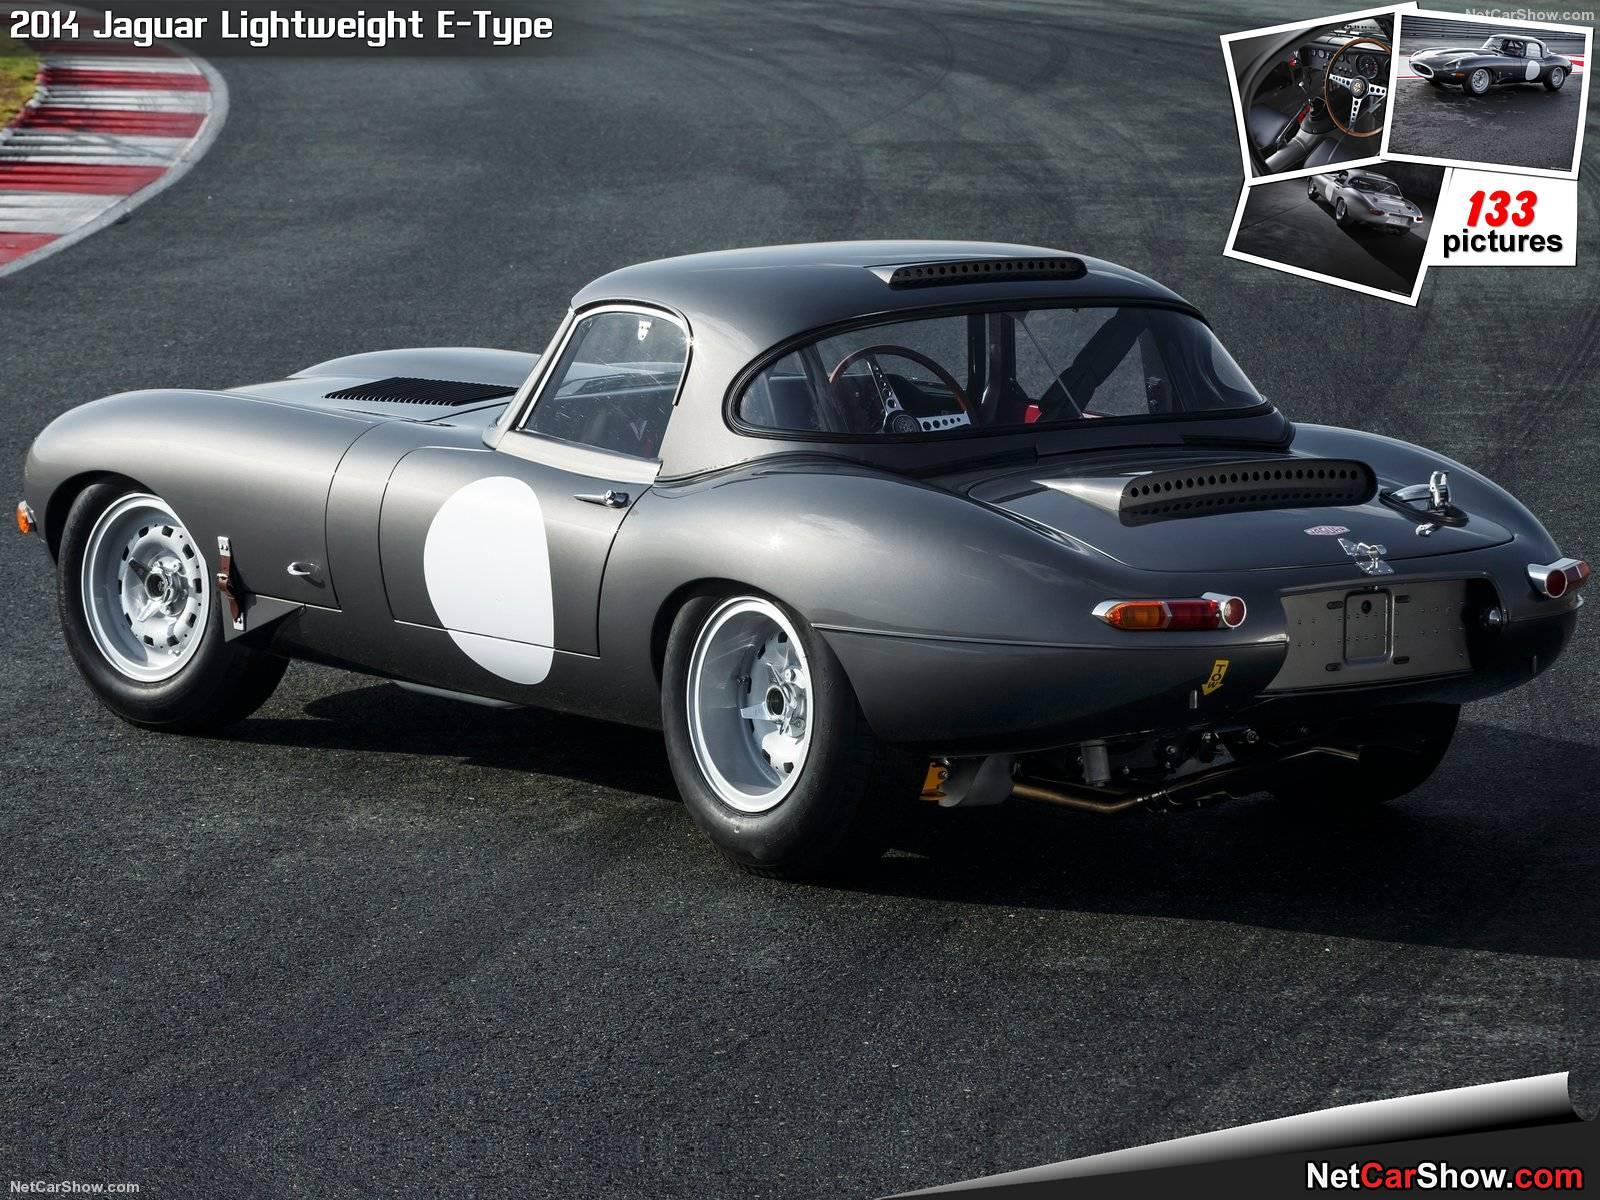 The legendary Jaguar E Lightweight 